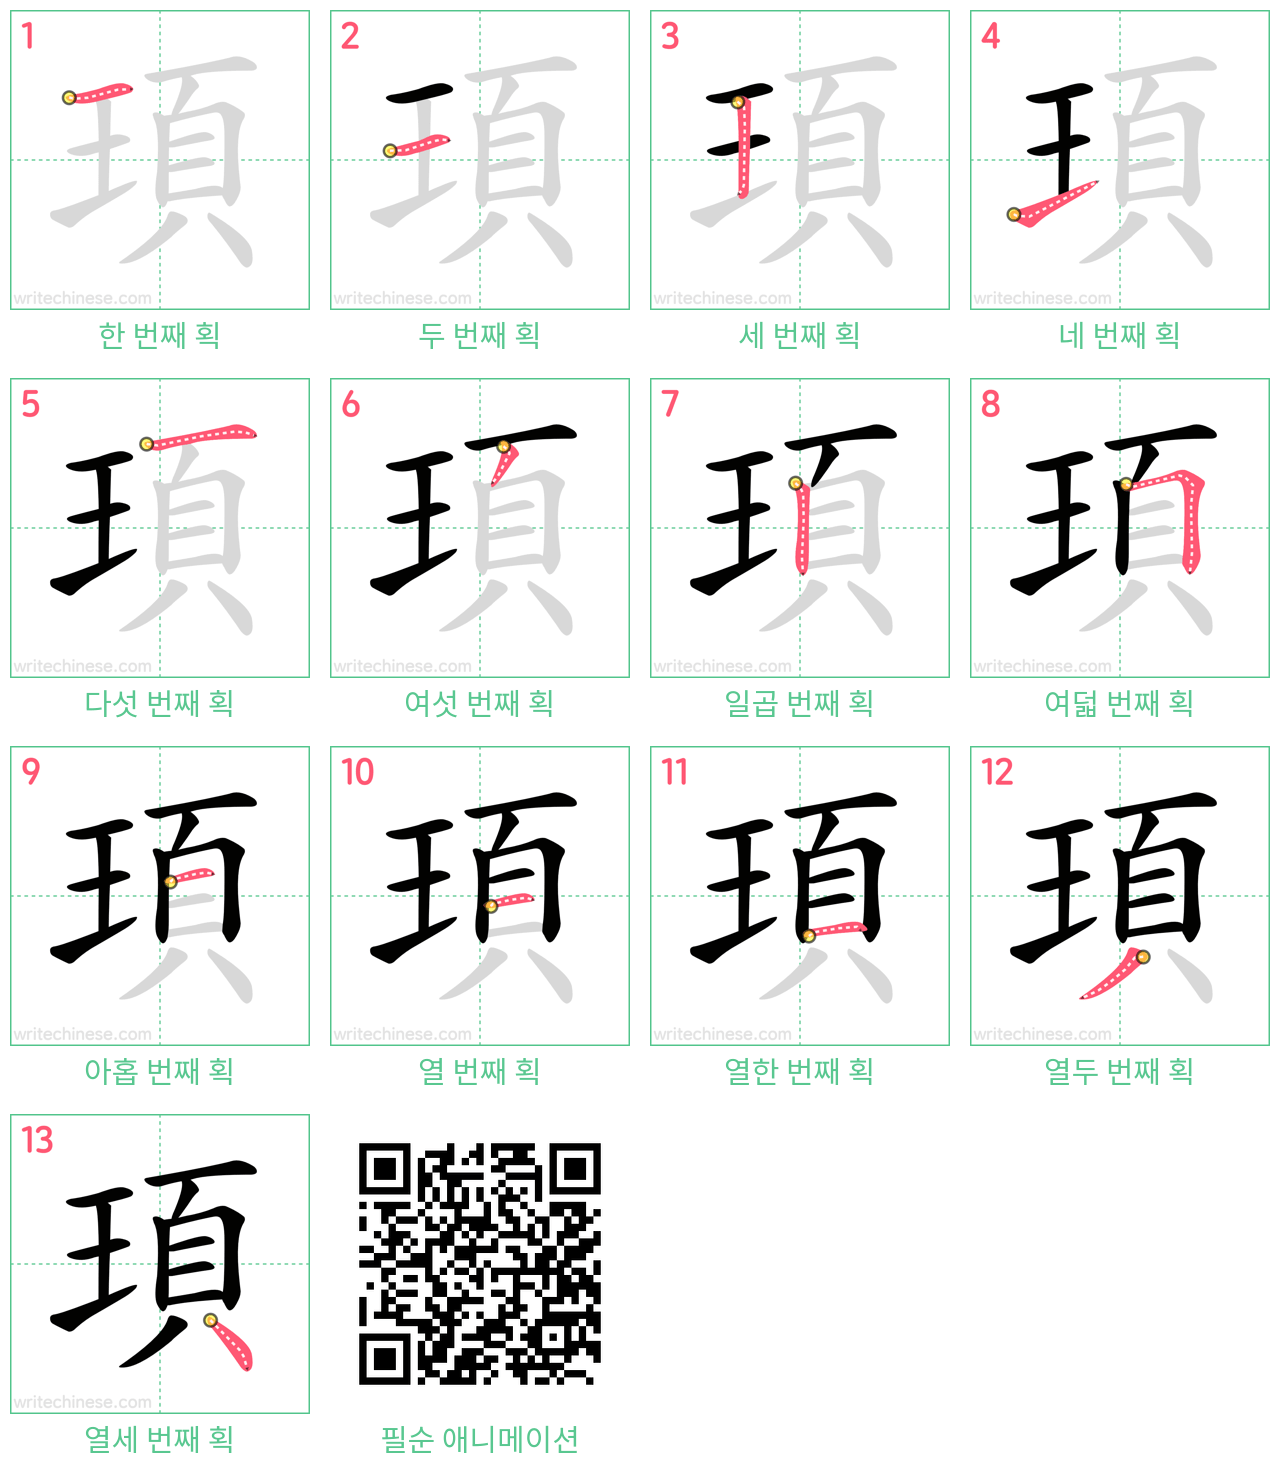 頊 step-by-step stroke order diagrams